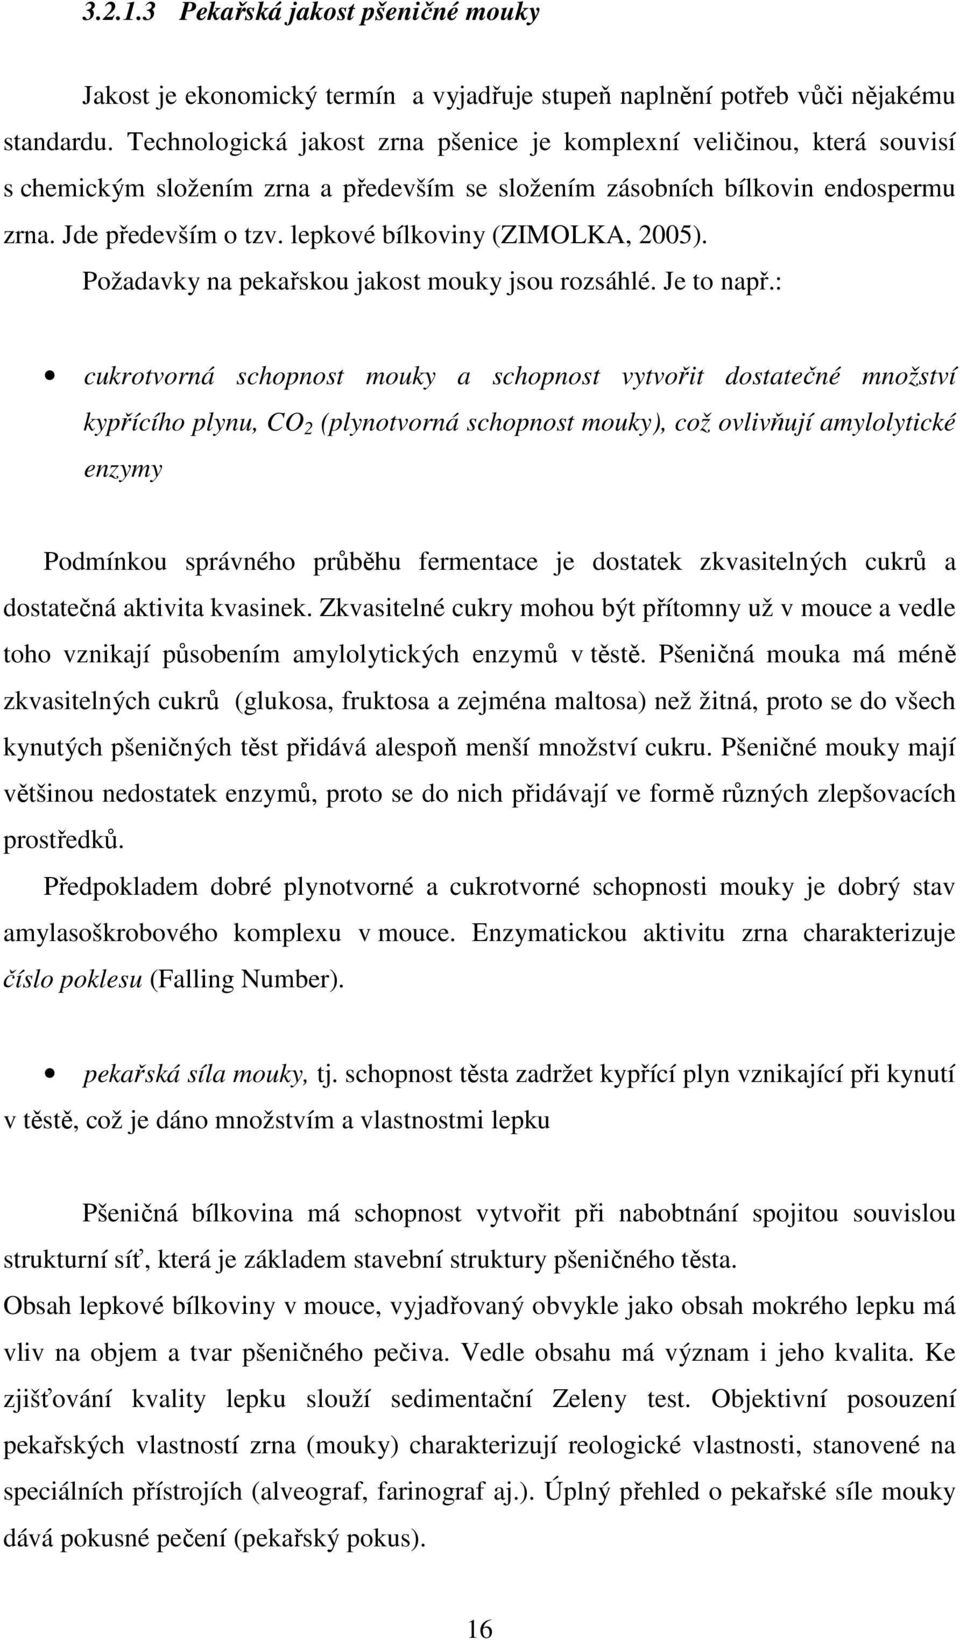 lepkové bílkoviny (ZIMOLKA, 2005). Požadavky na pekařskou jakost mouky jsou rozsáhlé. Je to např.